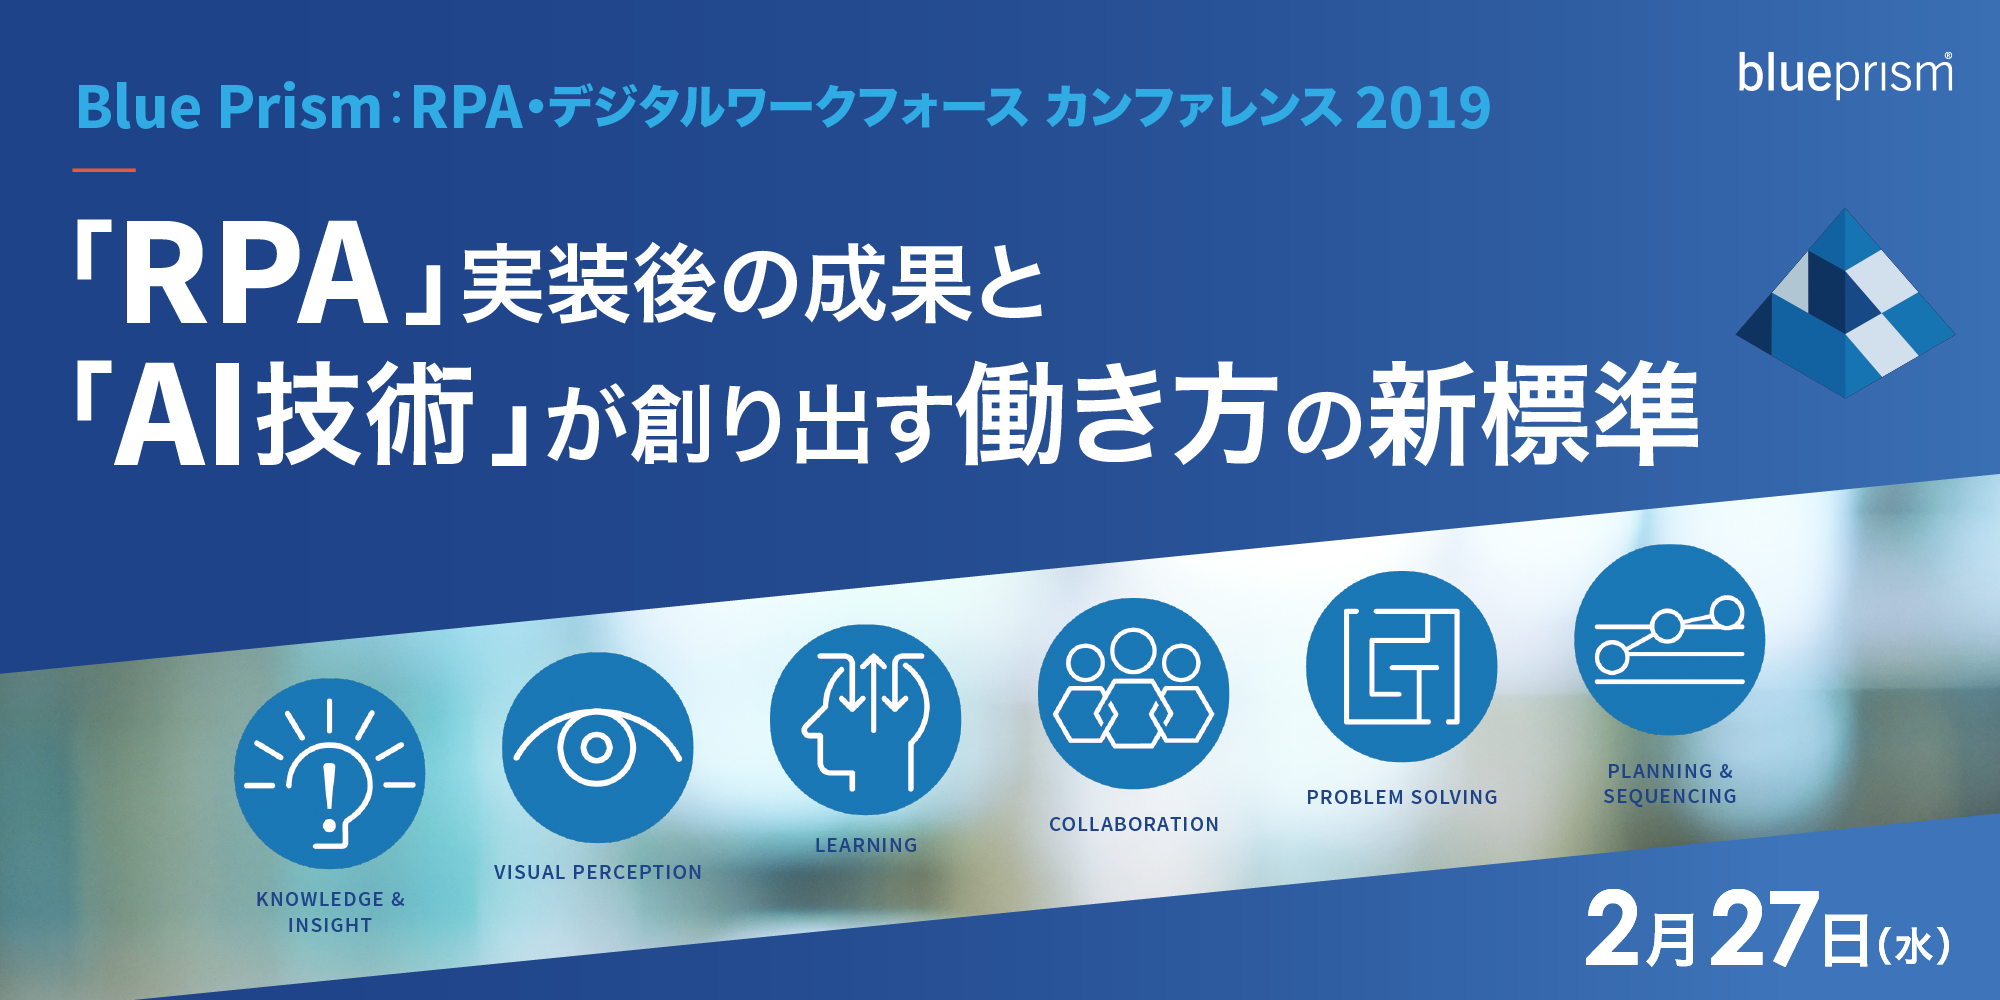 Blue Prism： RPA・デジタルワークフォース カンファレンス 2019